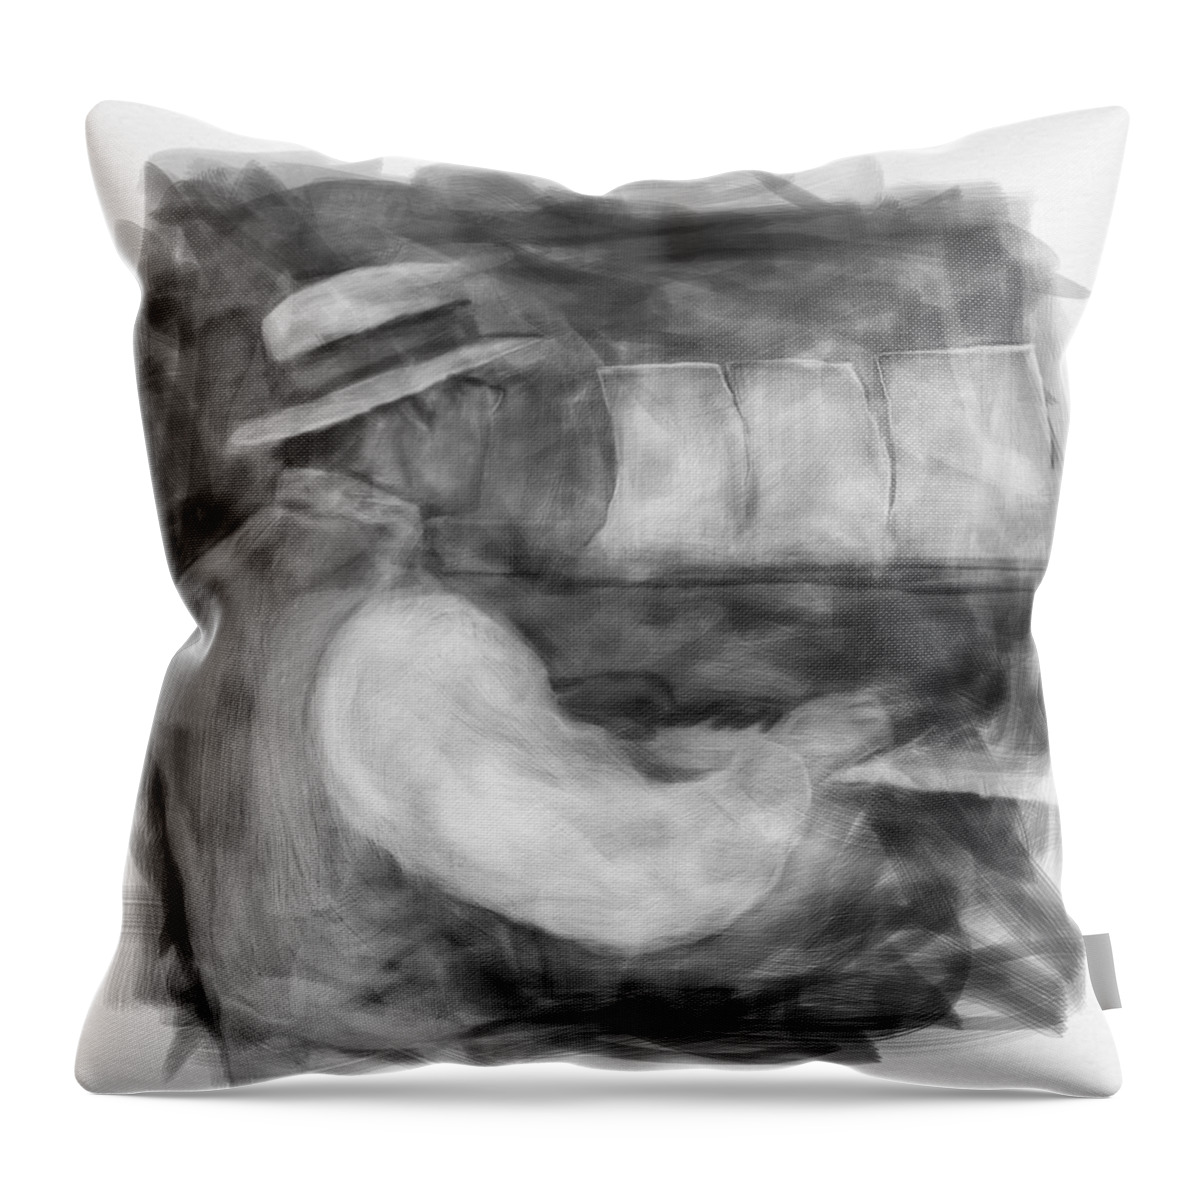 Edmonton Throw Pillow featuring the digital art Ragtime Blues by Eduardo Tavares